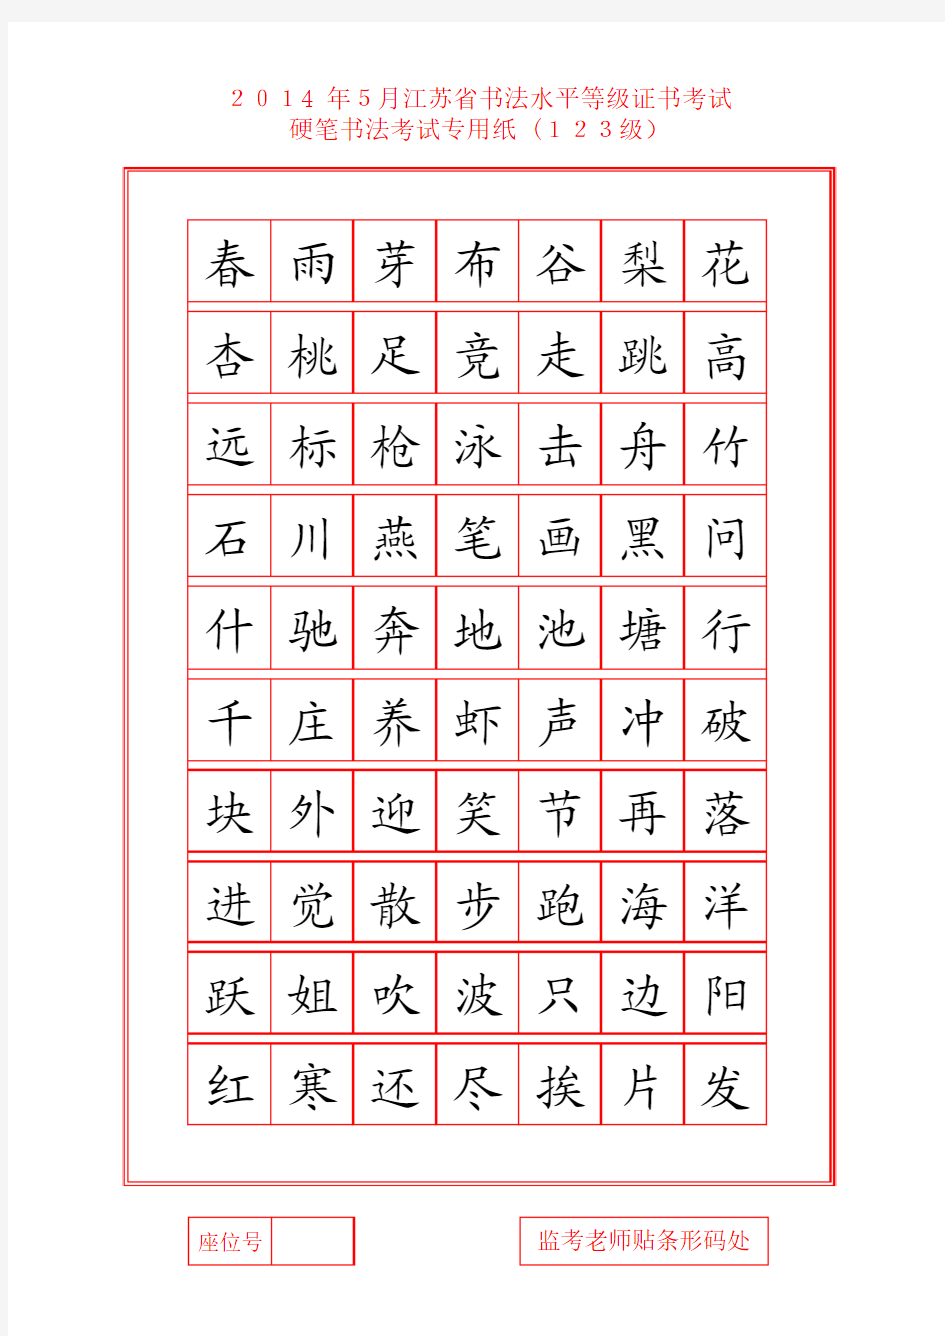 江苏省书法水平等级证书考试--硬笔书法考试专用纸_(123级)范字